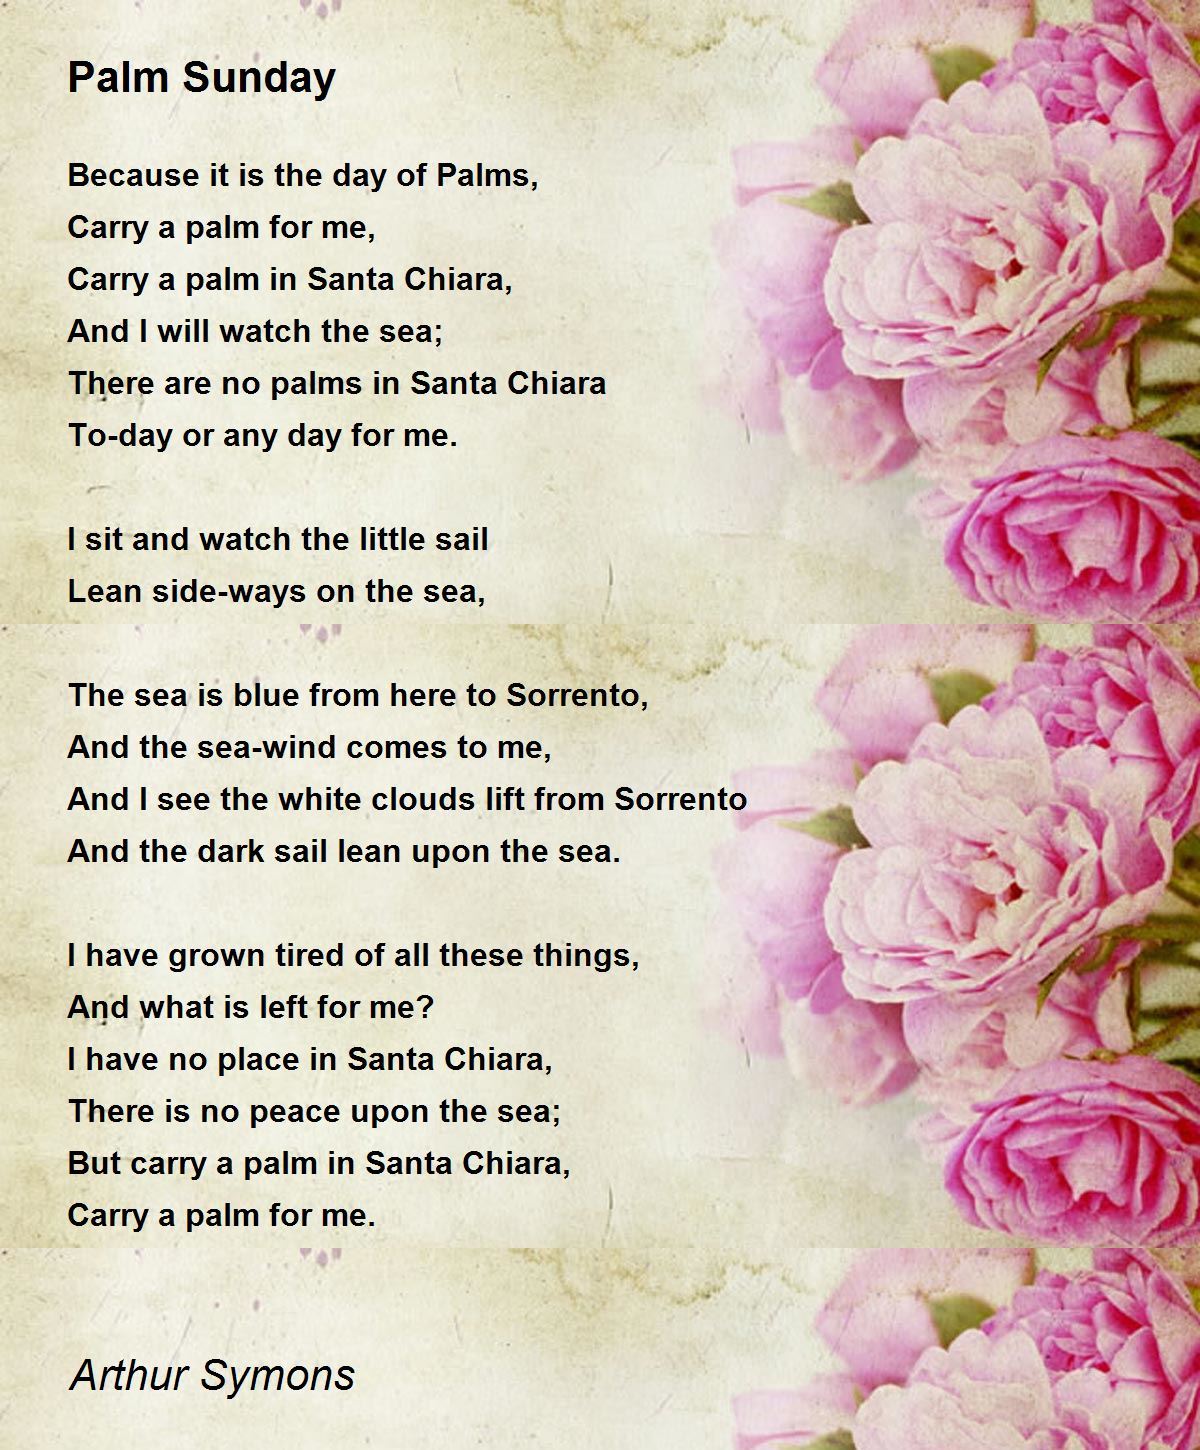 Palm Sunday by Arthur Symons - Palm Sunday Poem